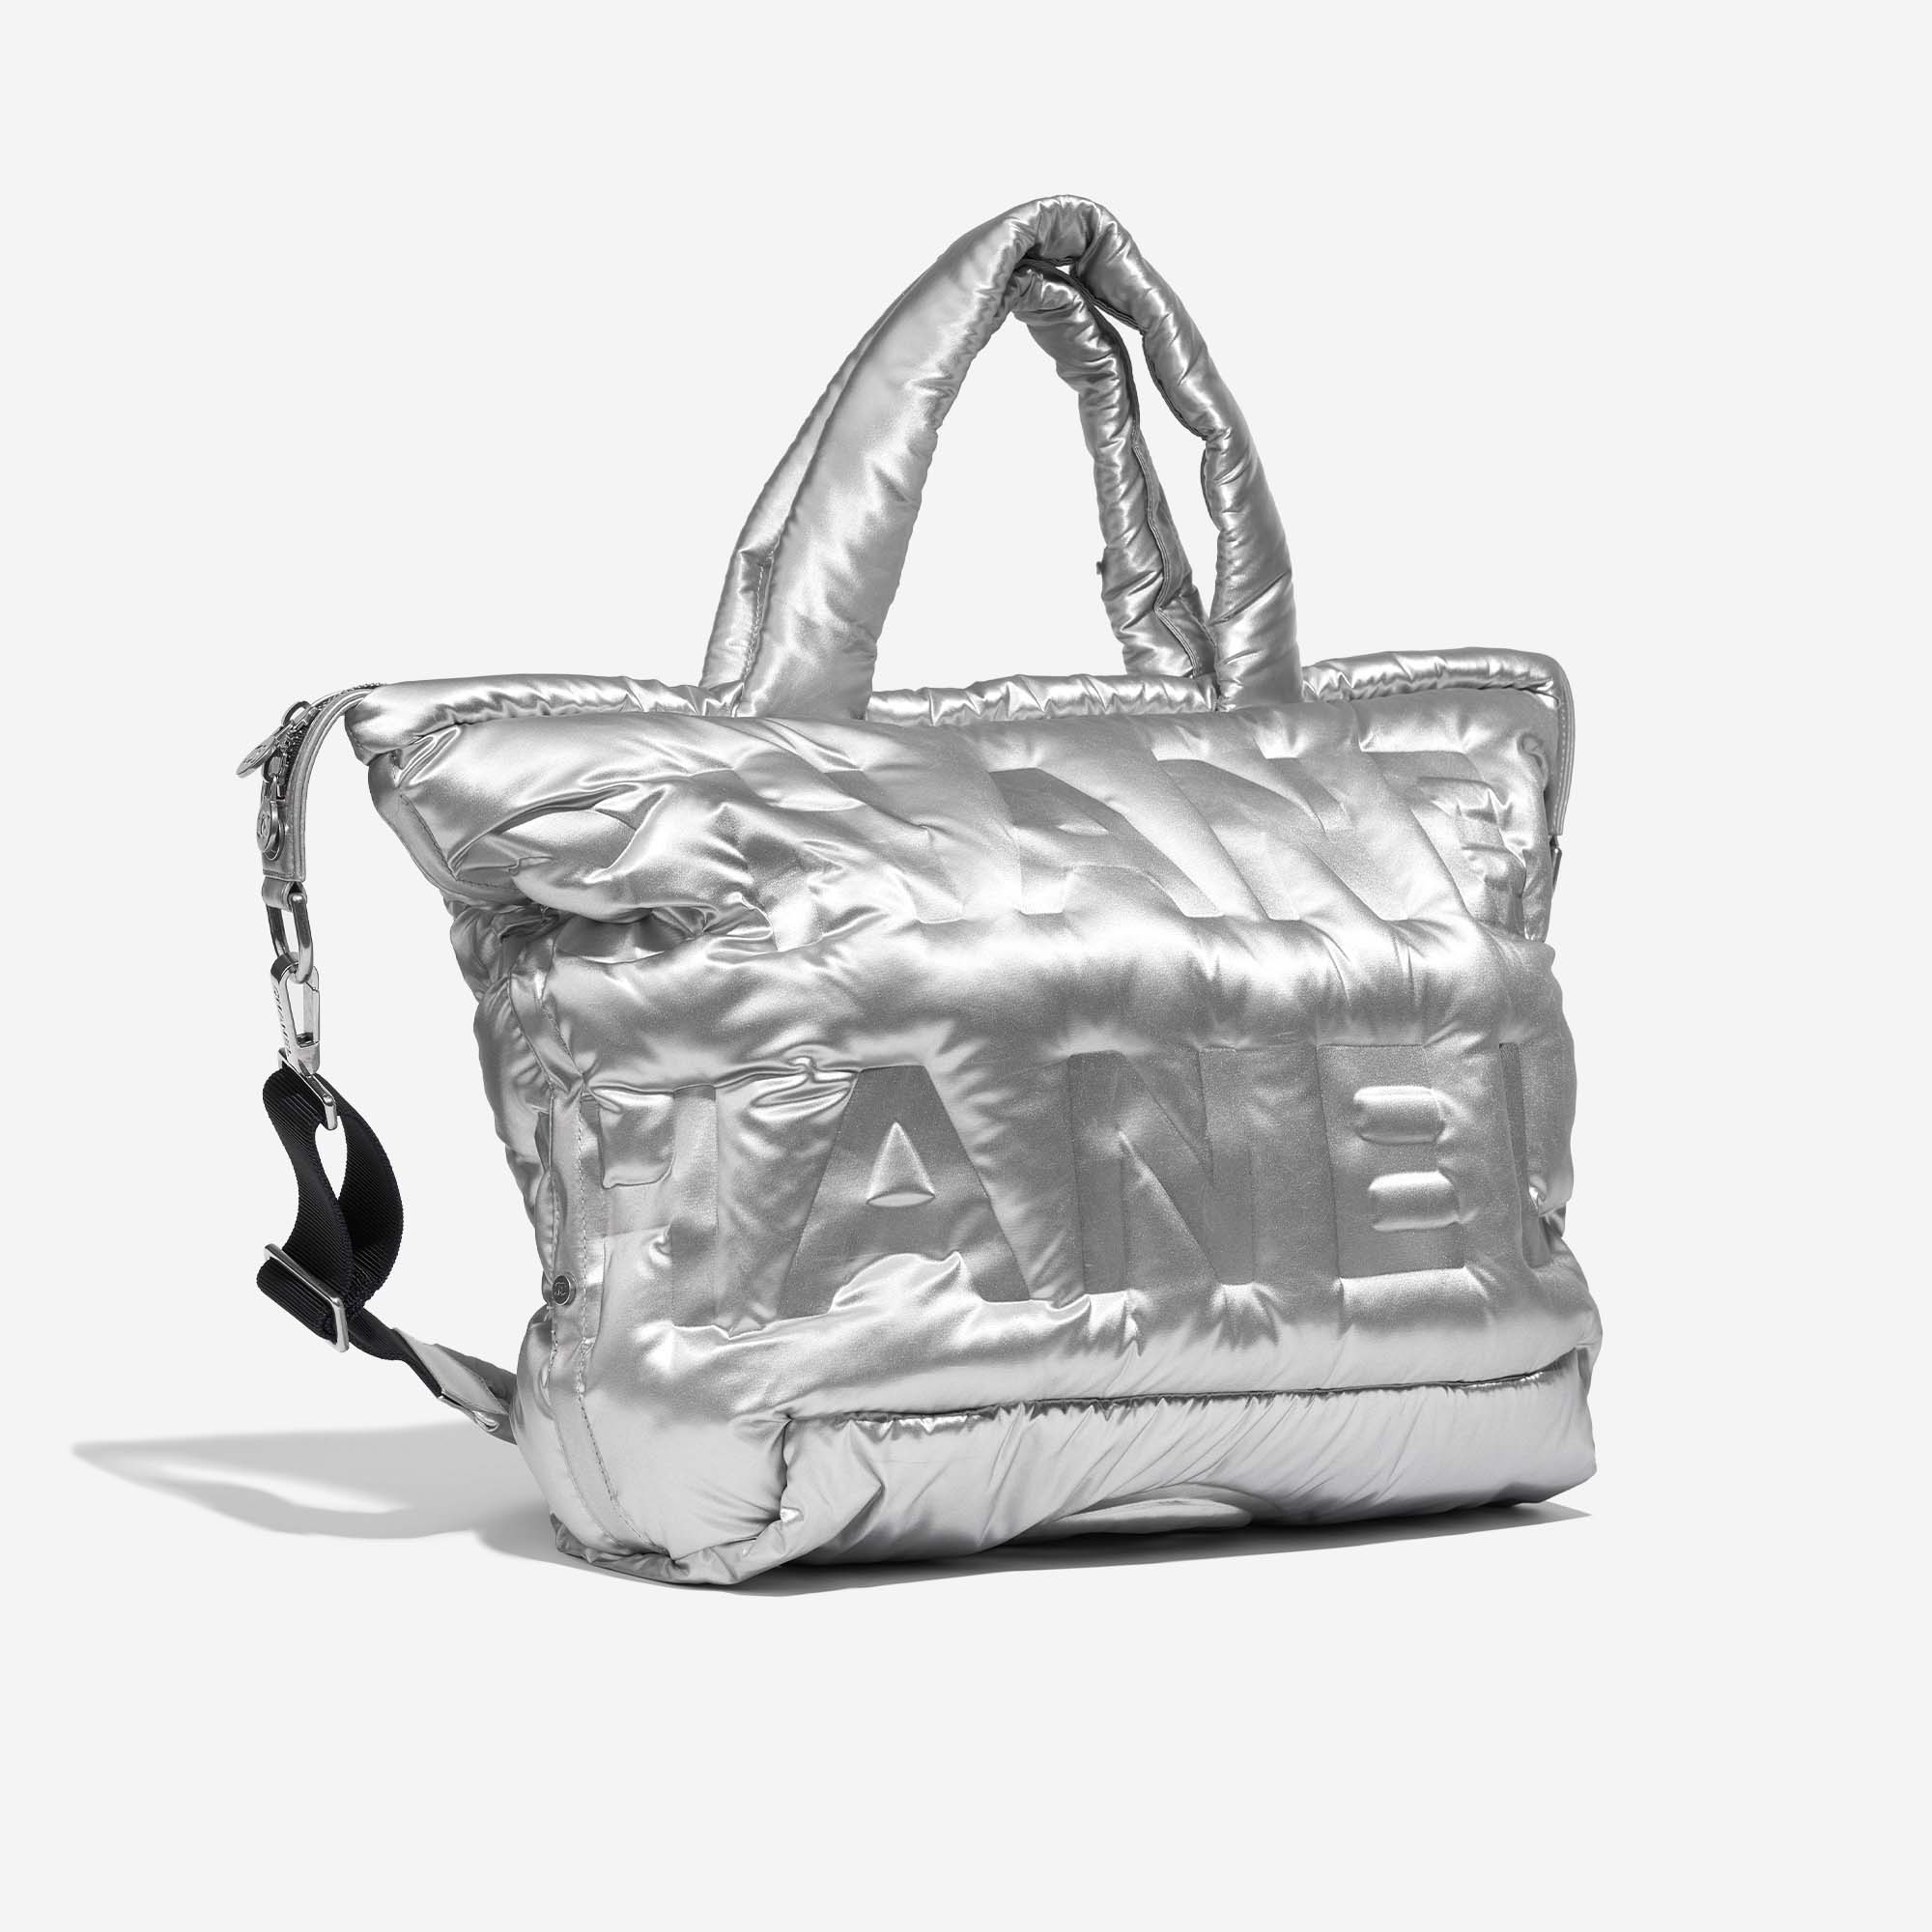 Chanel ShoppingTote Silver Side Front | Verkaufen Sie Ihre Designer-Tasche auf Saclab.com